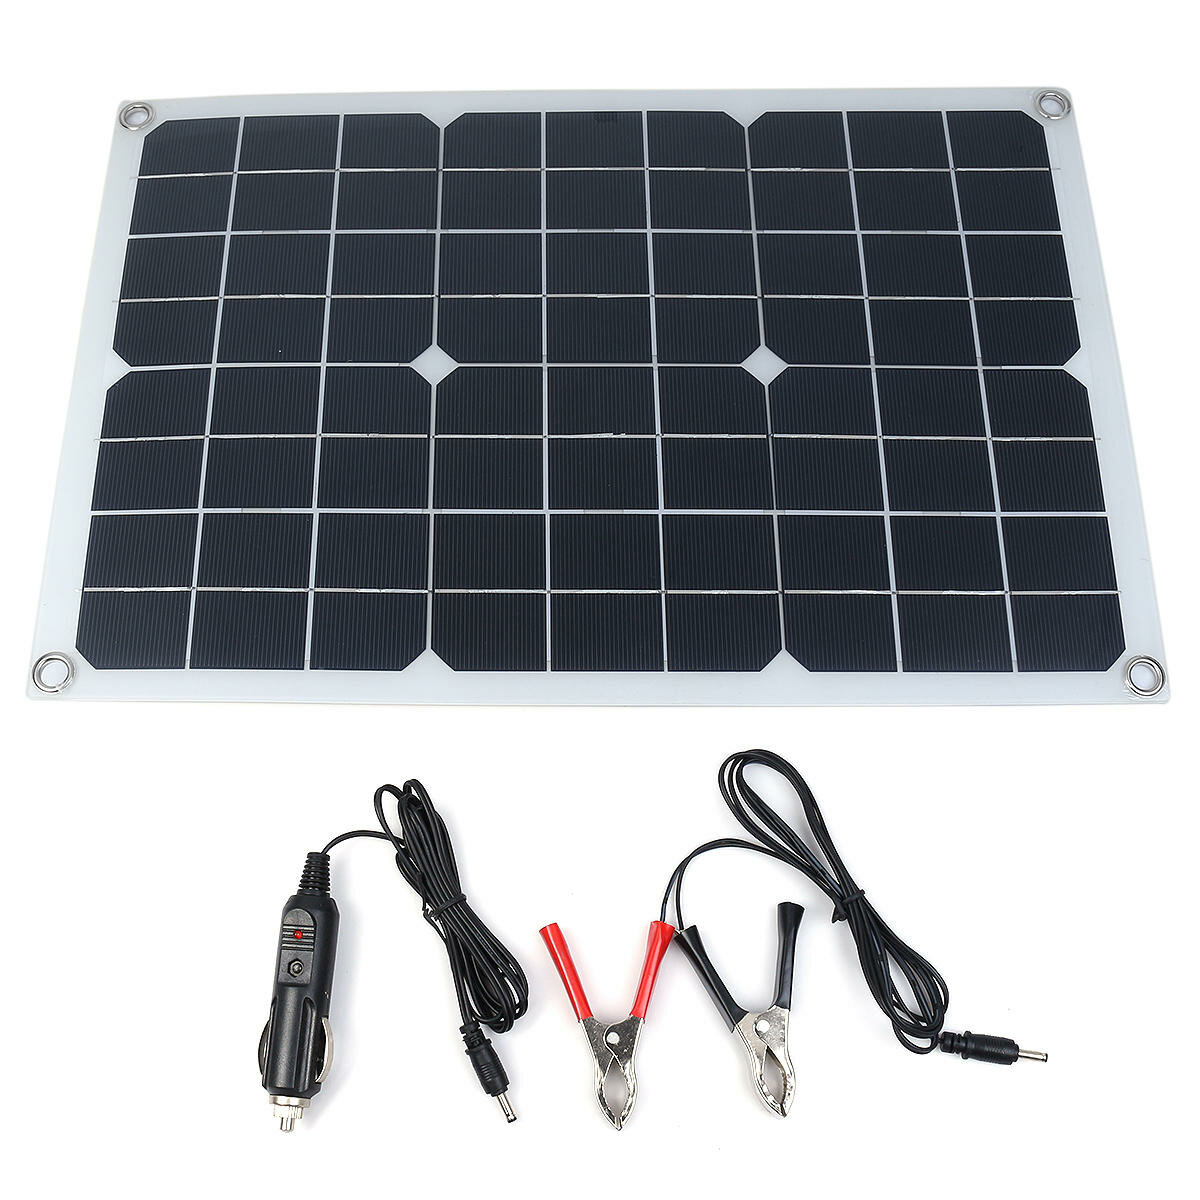 18V 100W Solar Panel portátil Solar Banco de energía para exteriores cámping barco Teléfonos inteligentes Batería Cargadores Celdas Energía de emergencia